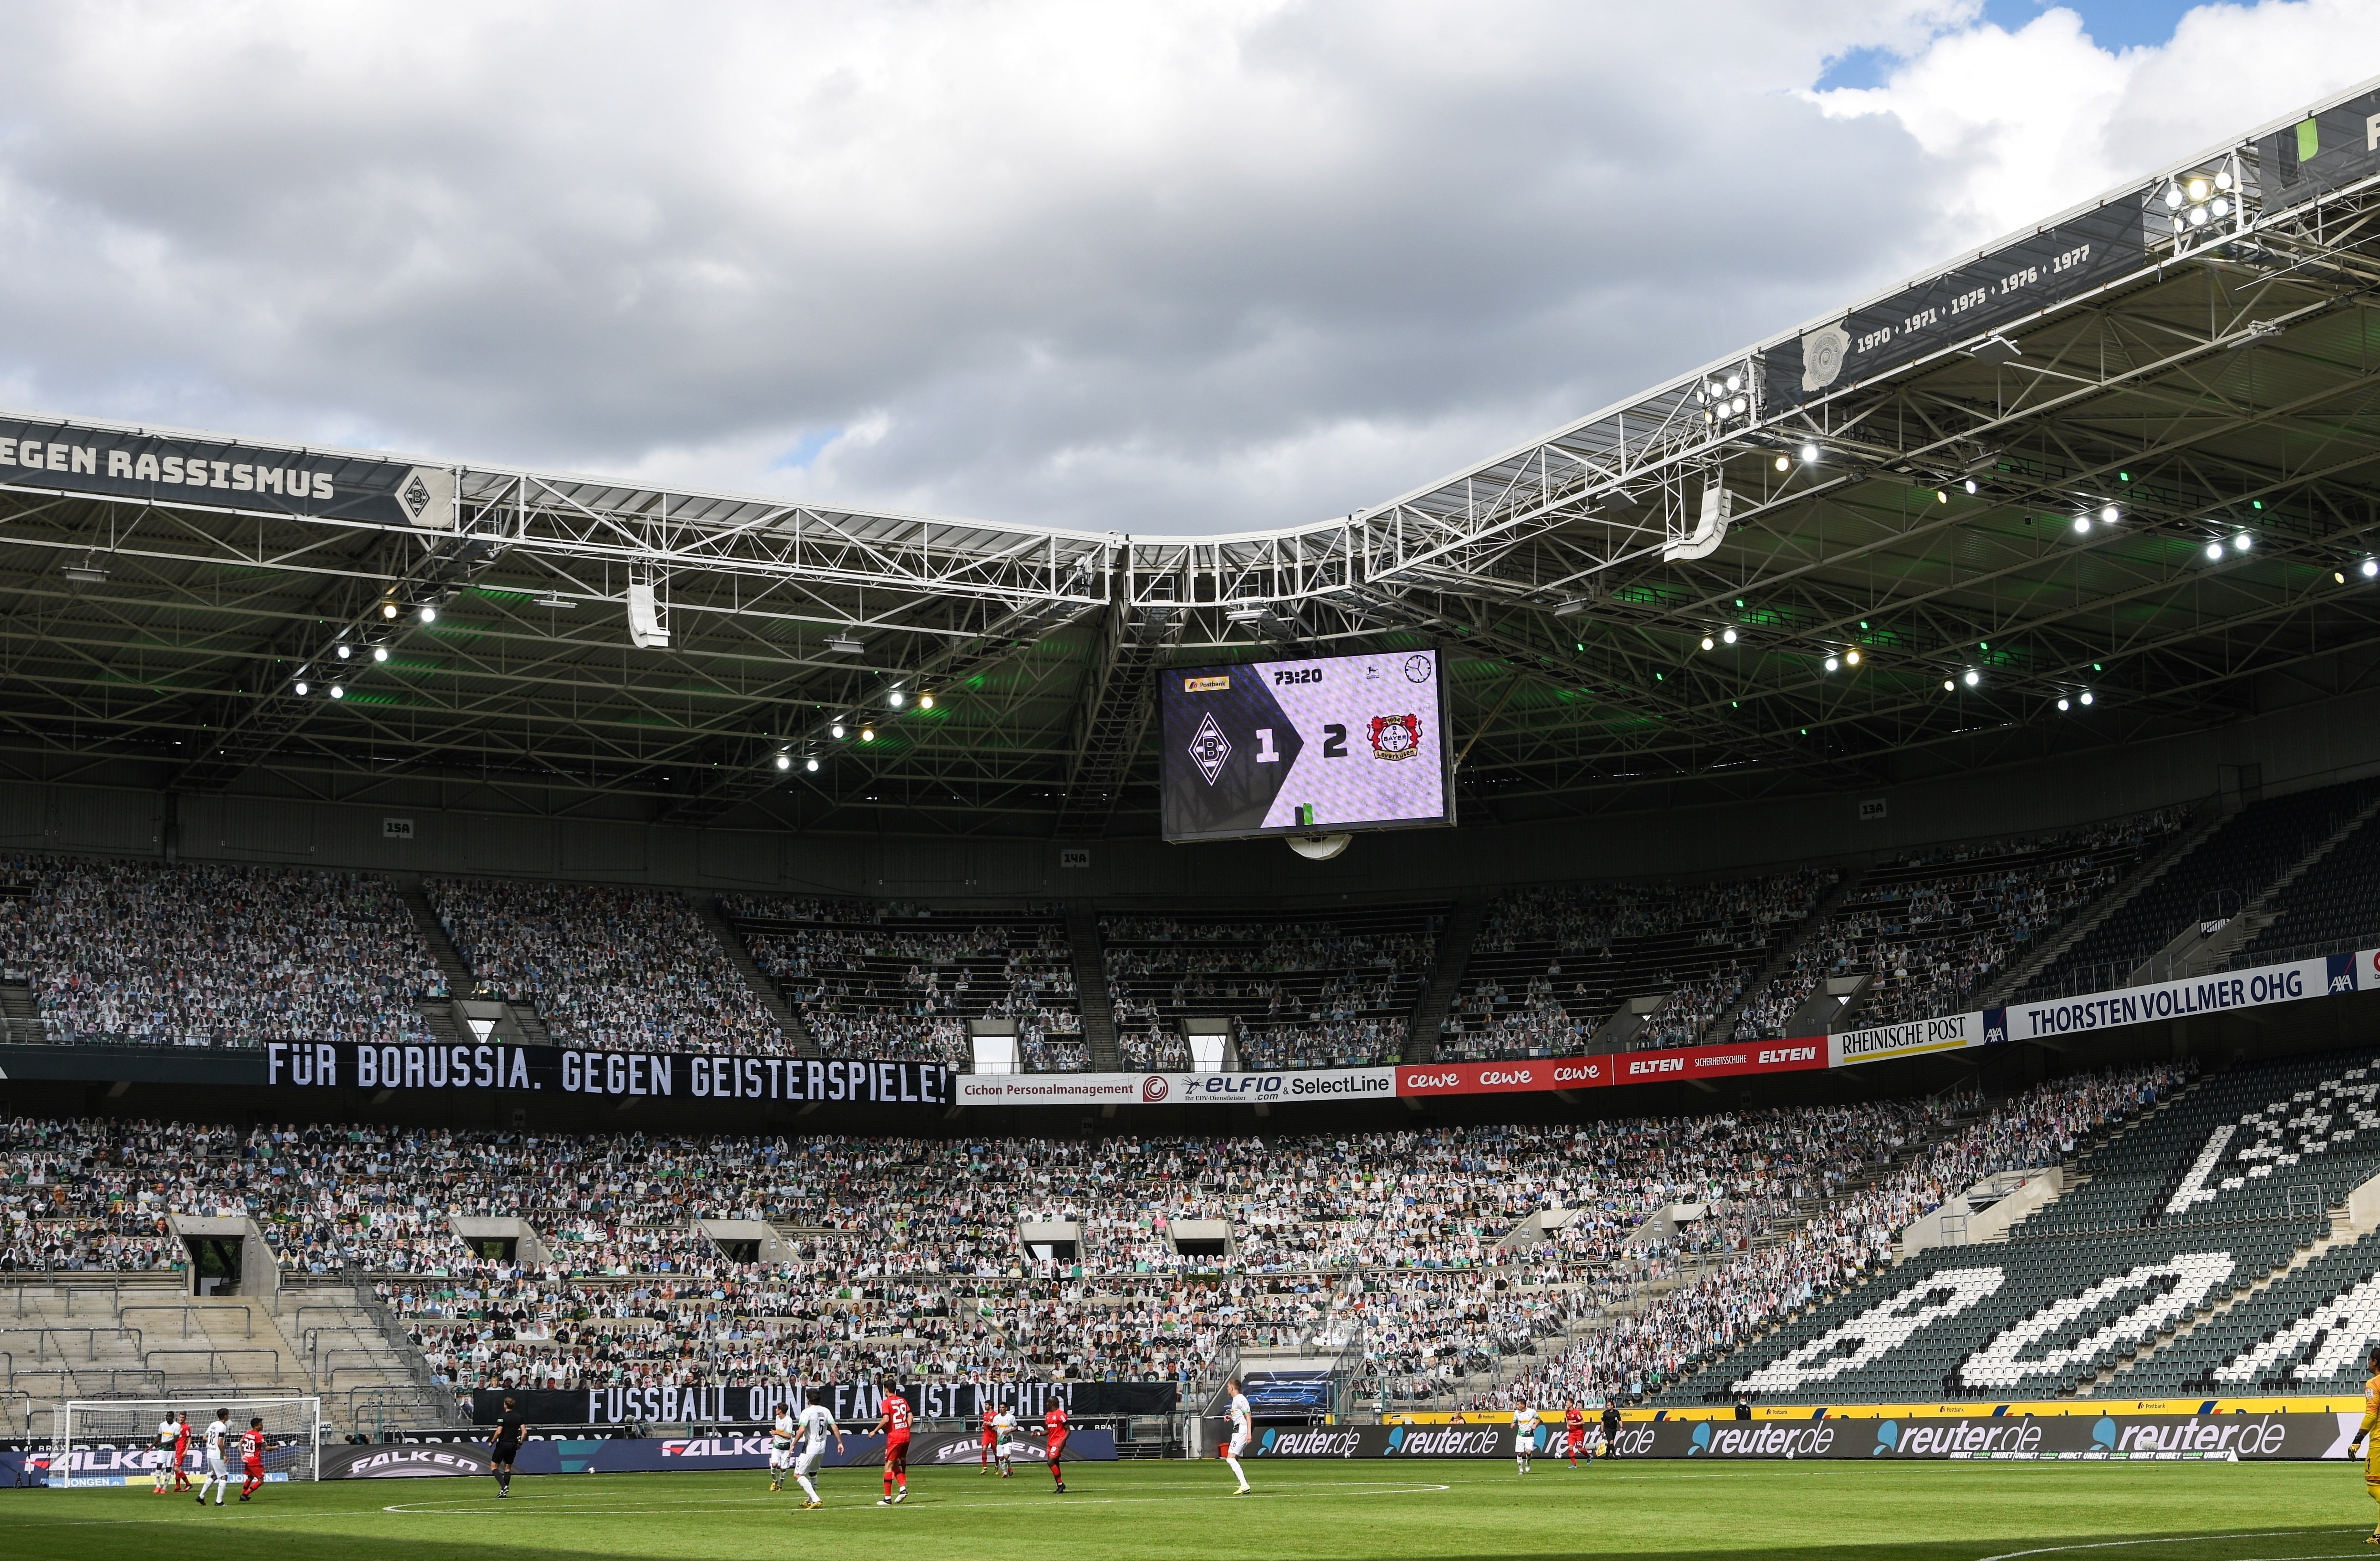 Sorprenent imatge a la Bundesliga: a porta tancada però amb 13.000 aficionats